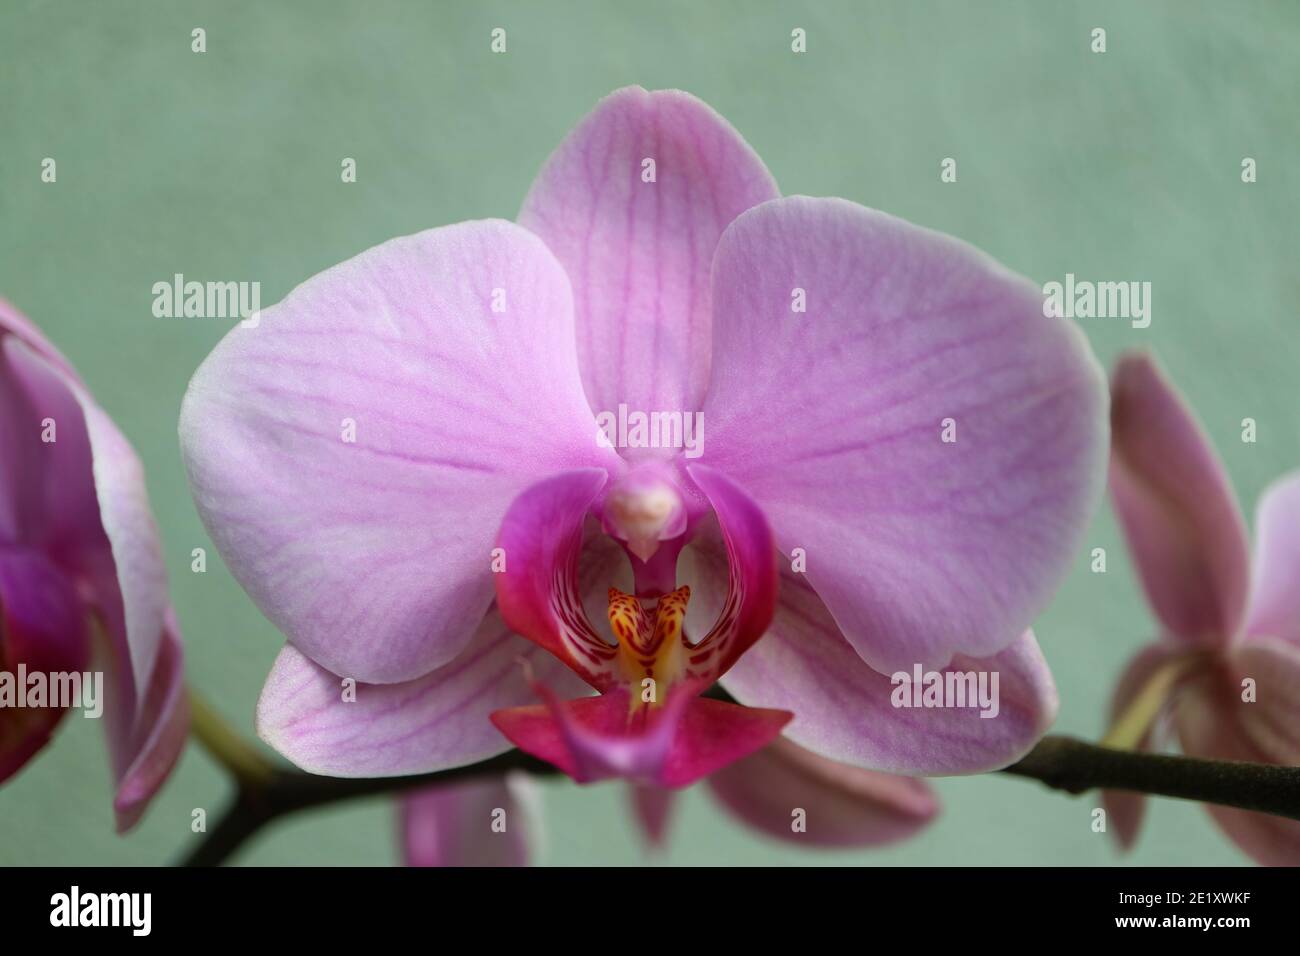 Orchidée rose avec pétales délicats, bourgeons et motifs, macro orchidée rose, tête de fleur, beauté dans la nature, fleur exotique, macro photographie, image de stock Banque D'Images